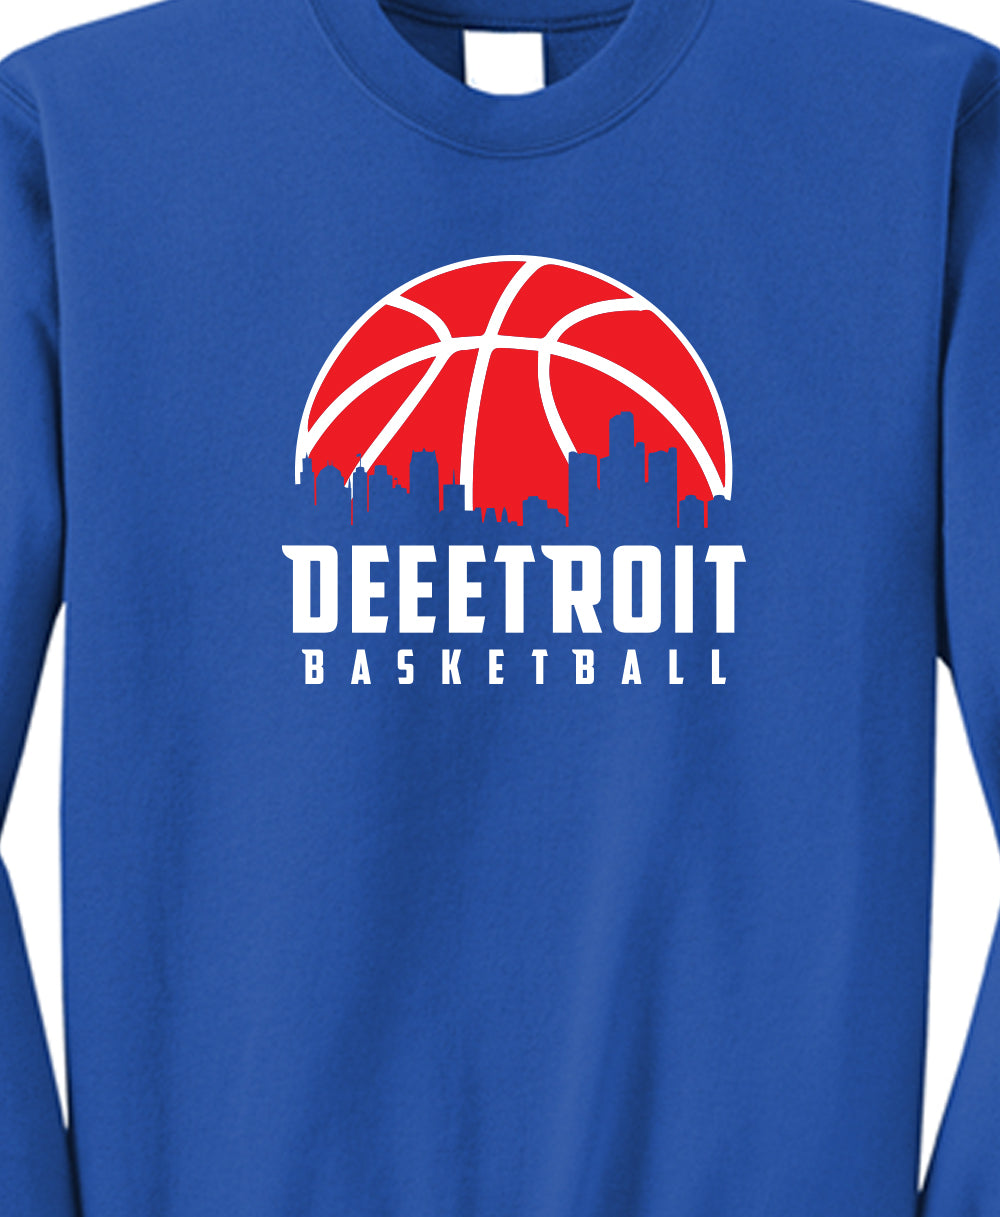 Deeetroit Basketball Crew Fleece